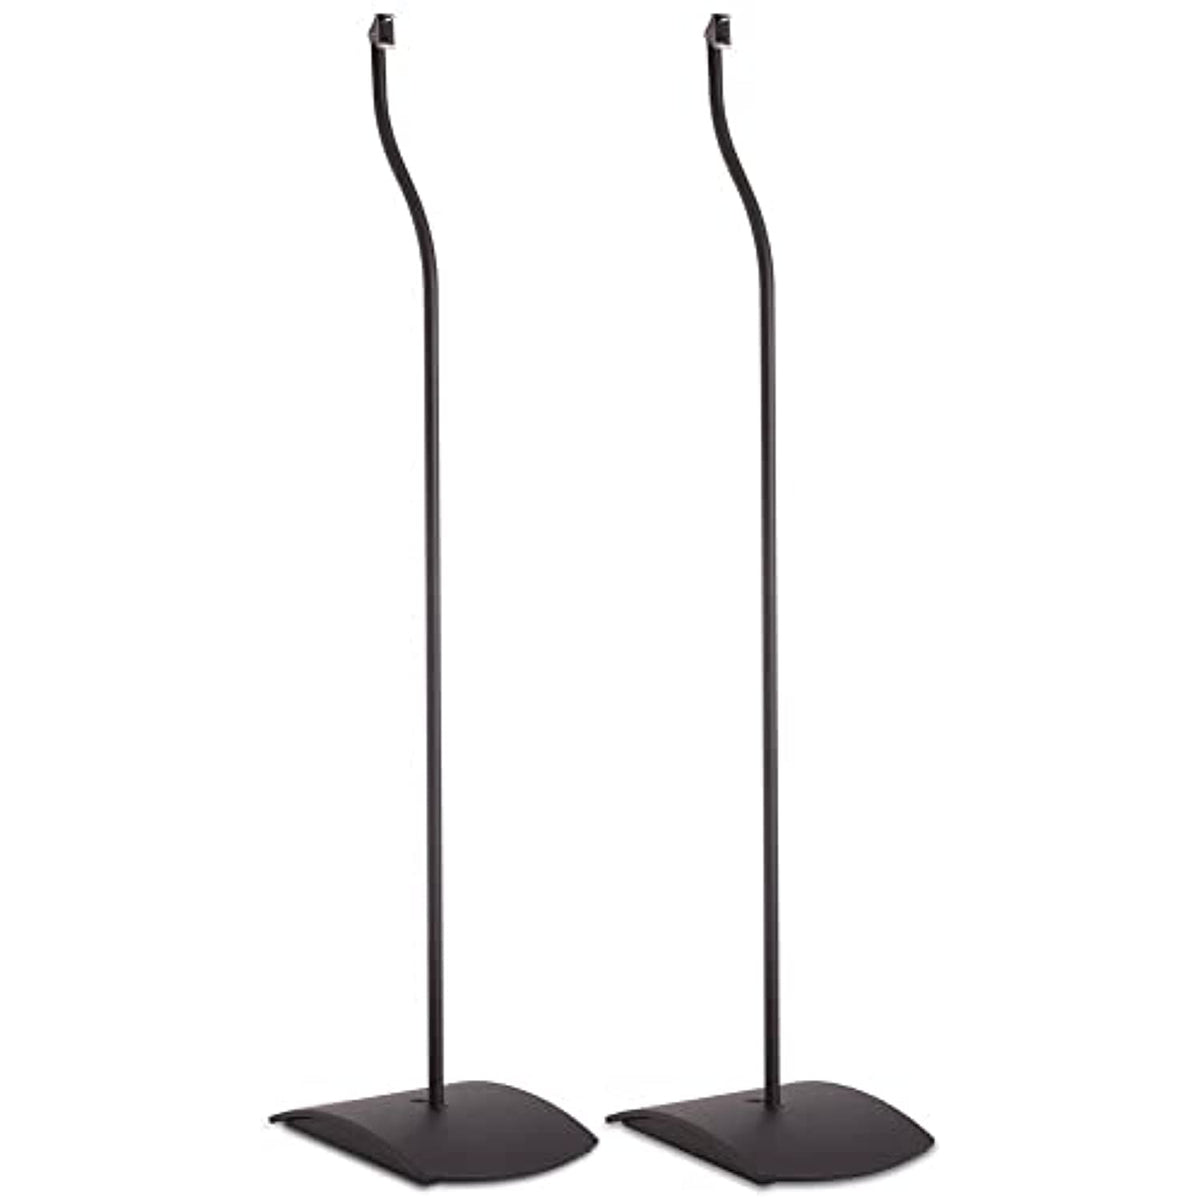 Bose UFS-20 Series II Universal Floor Stands (Pair of 2) - Black